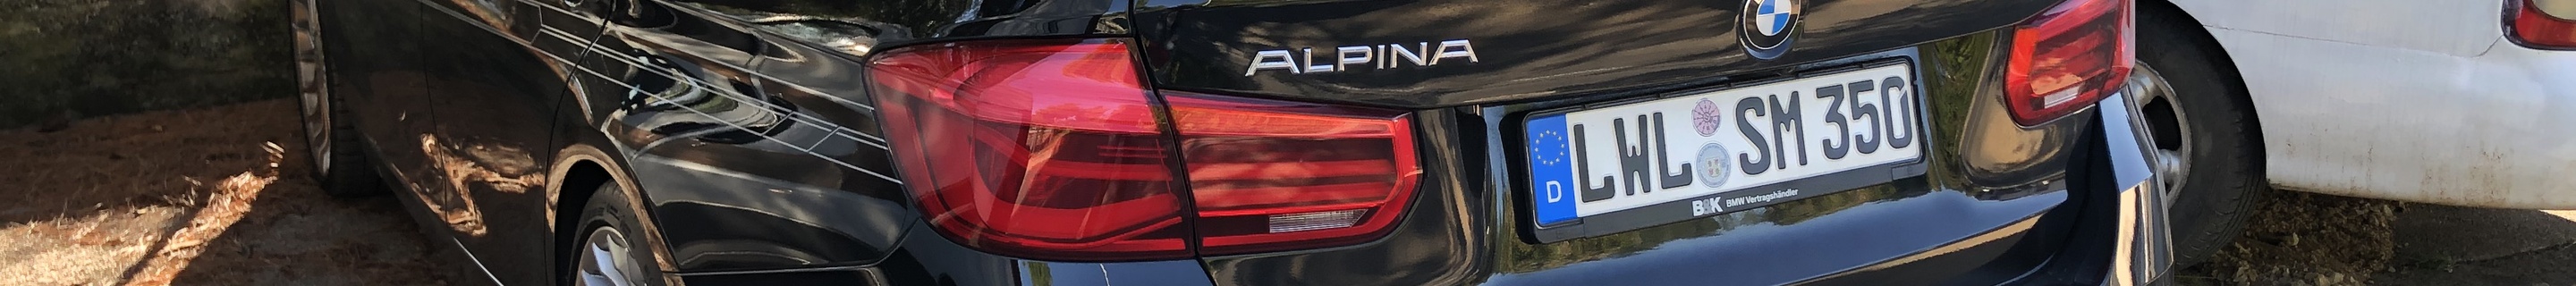 Alpina D3 BiTurbo Touring 2016